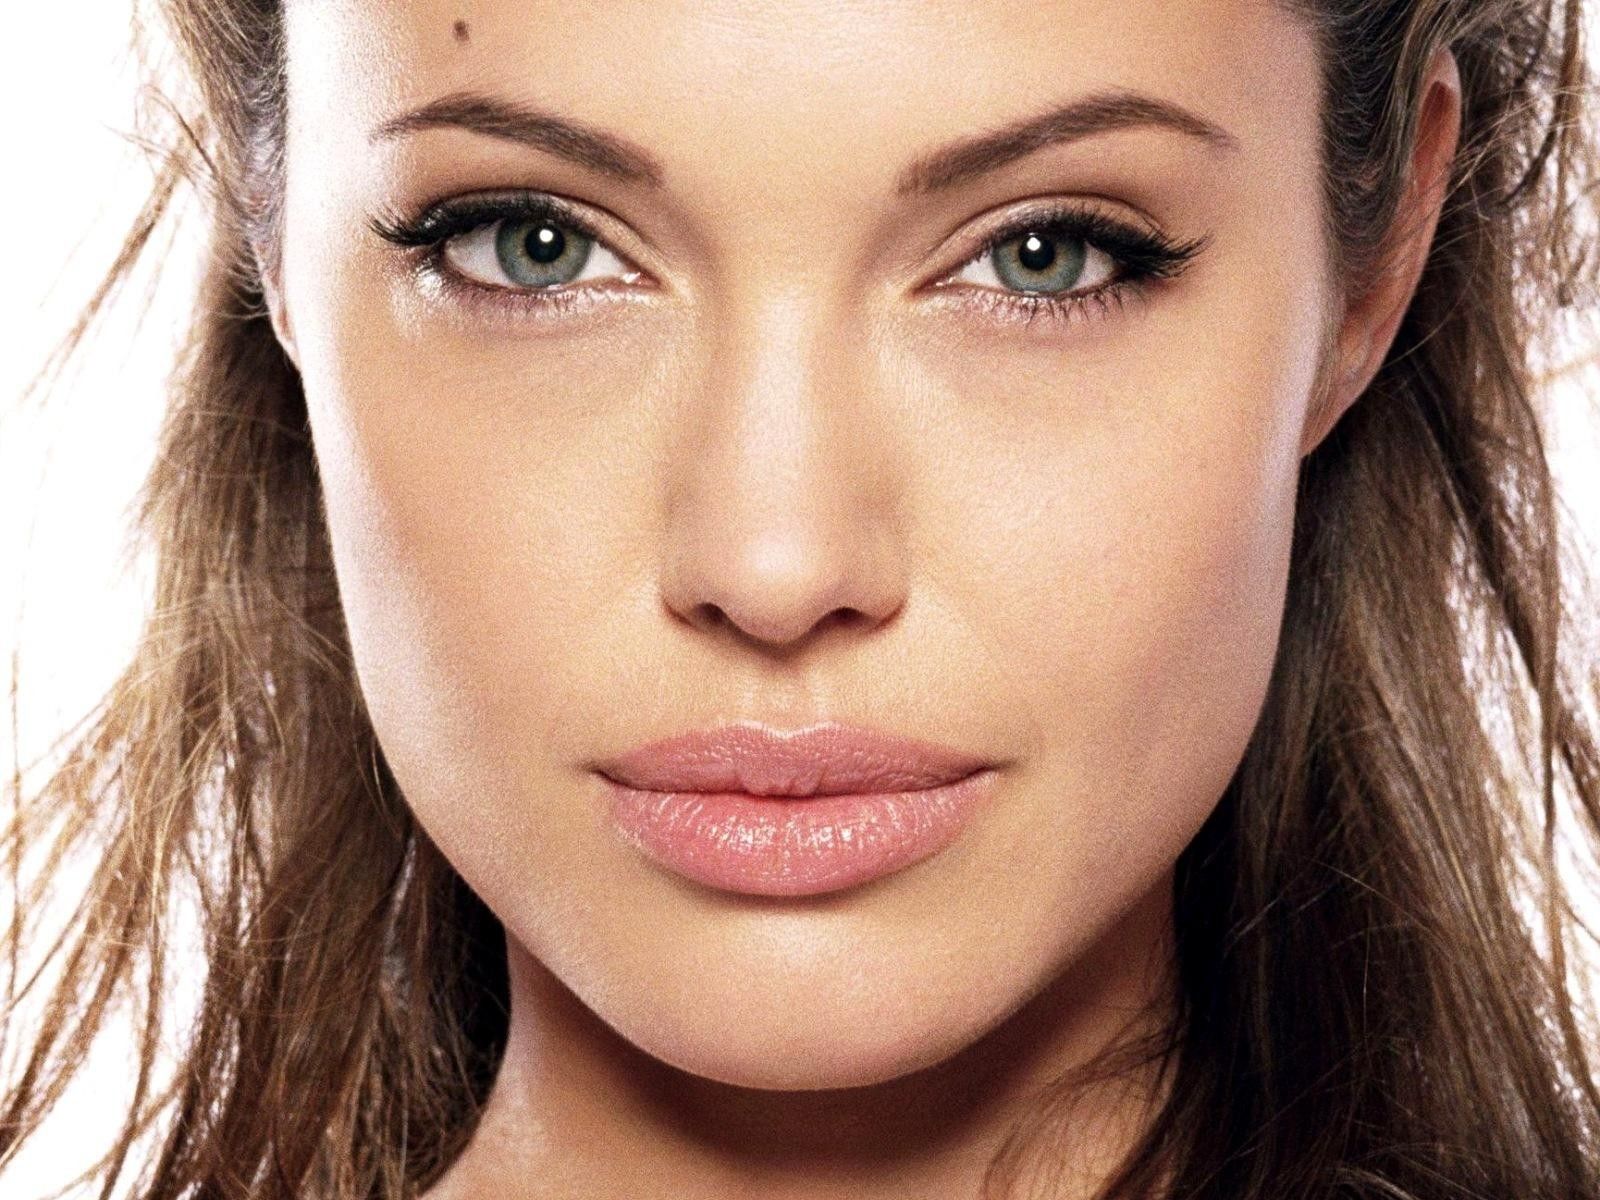 Самые красивые лица женщин. Анджелина Джоли фото анфас. Раскосые глаза Анджелина Джоли. Макияж Анджелины Джоли. Губы Анджелины Джоли.